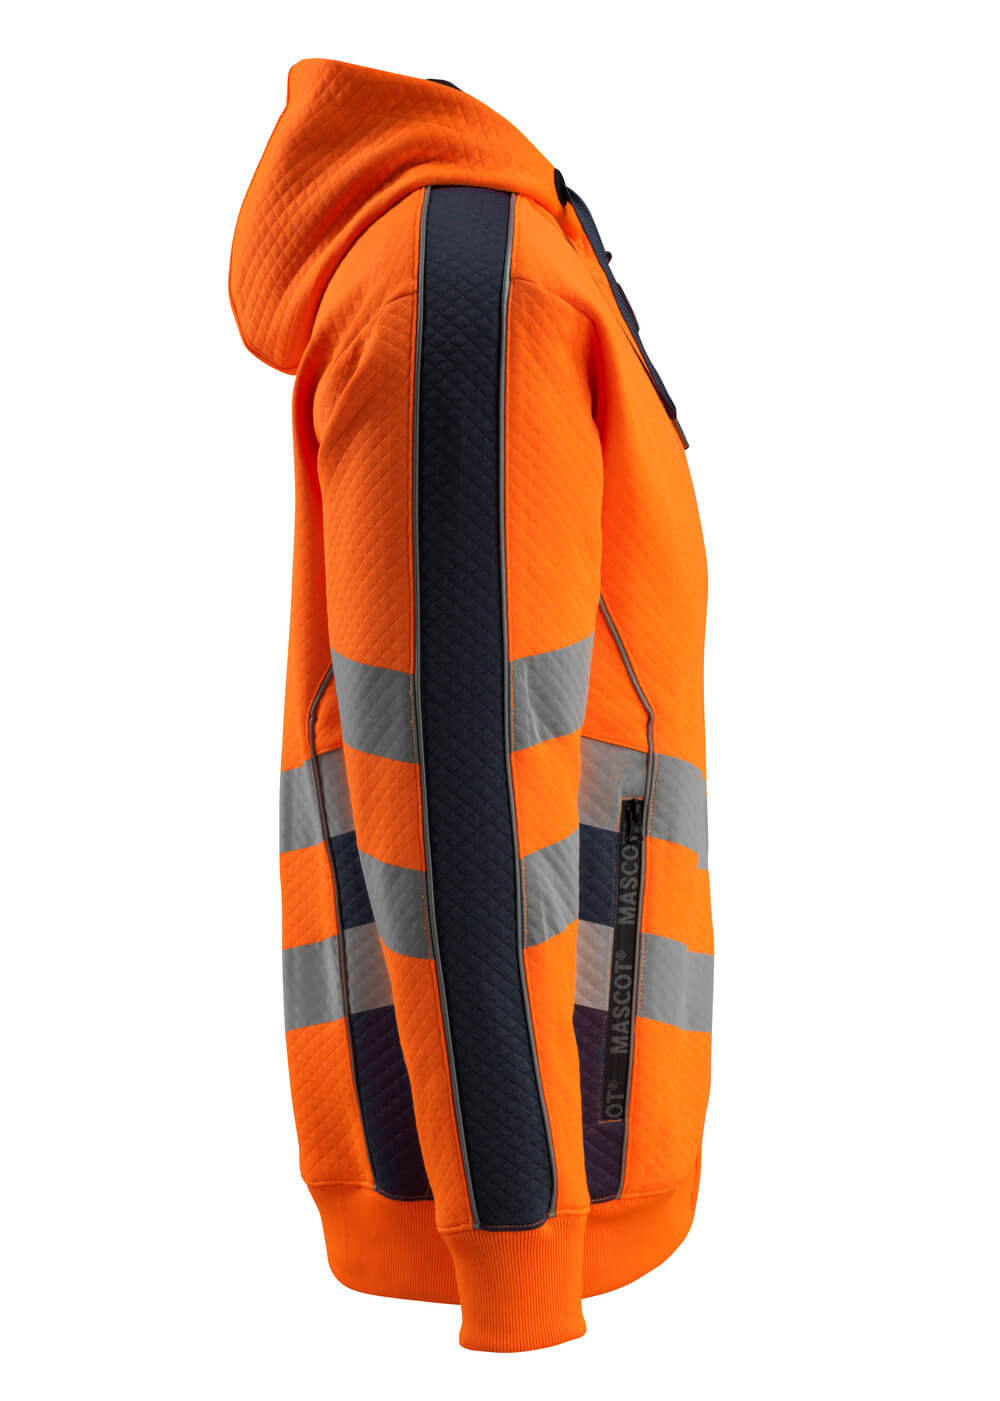 Kapuzensweatshirt mit Rei?verschluss SAFE SUPREME Kapuzensweatshirt mit Rei?verschluss in Farbe Hi-vis Orange/Schwarzblau